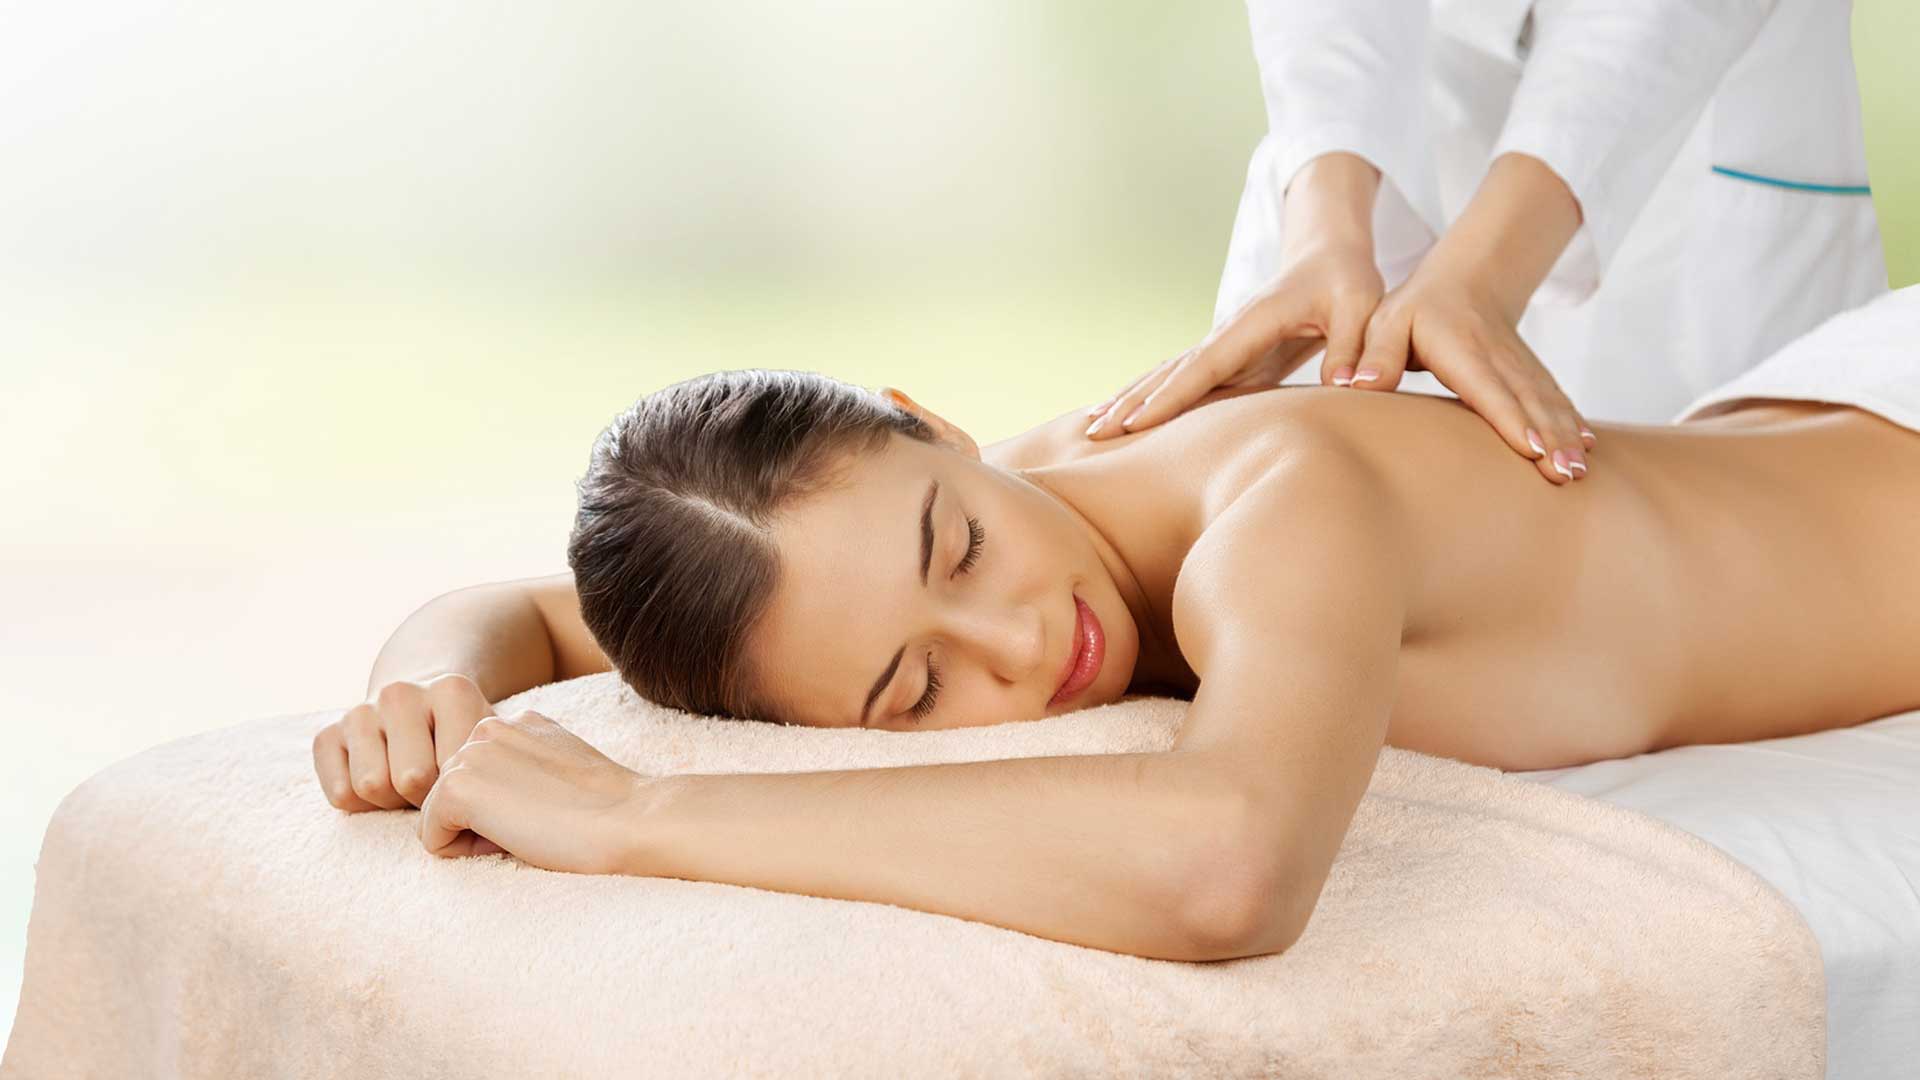 Massage classique, soin thérapeutique